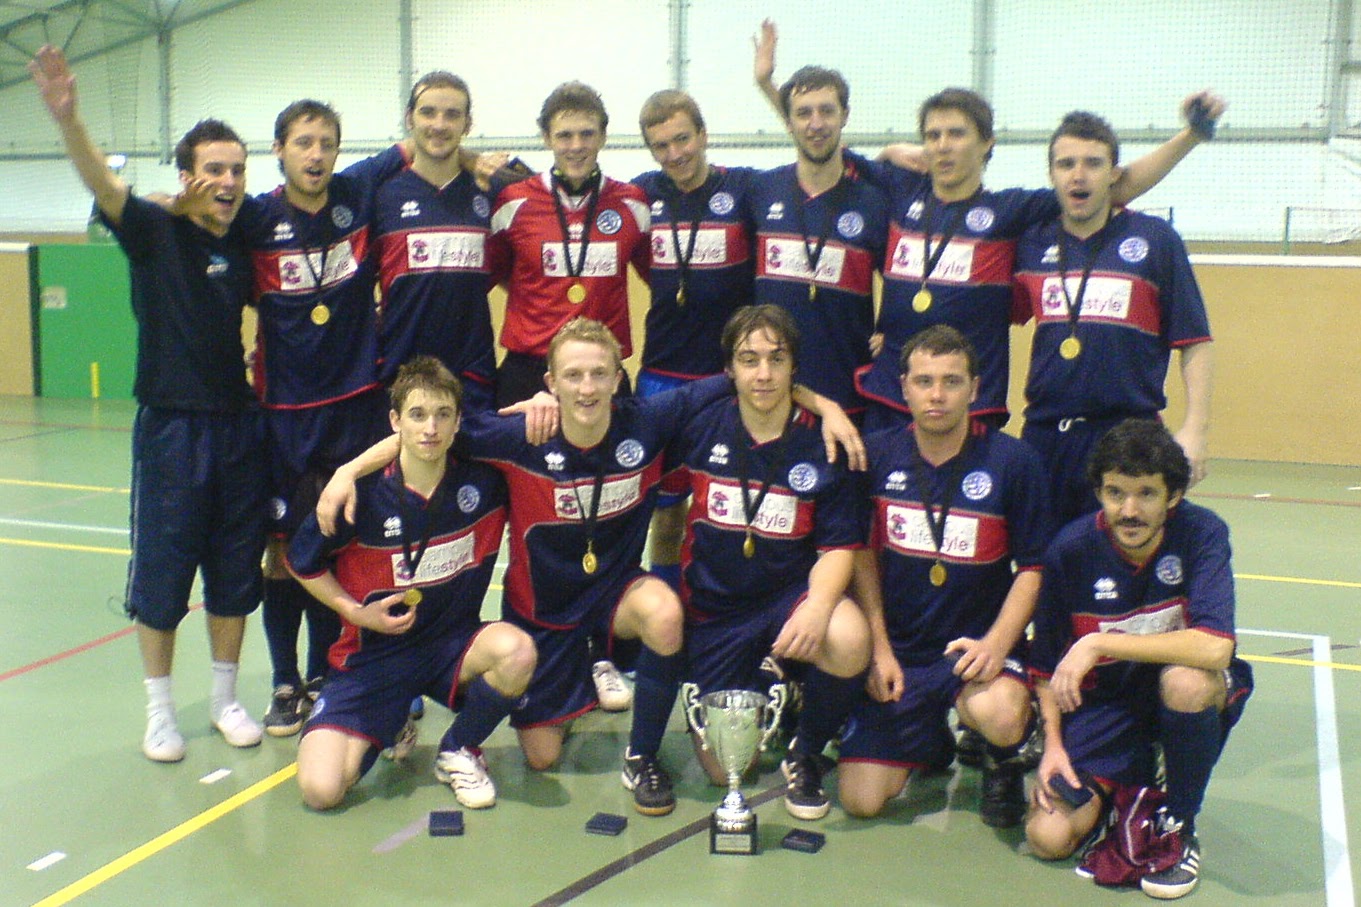 Boro Futsal champions of the York Futsal Open 2007